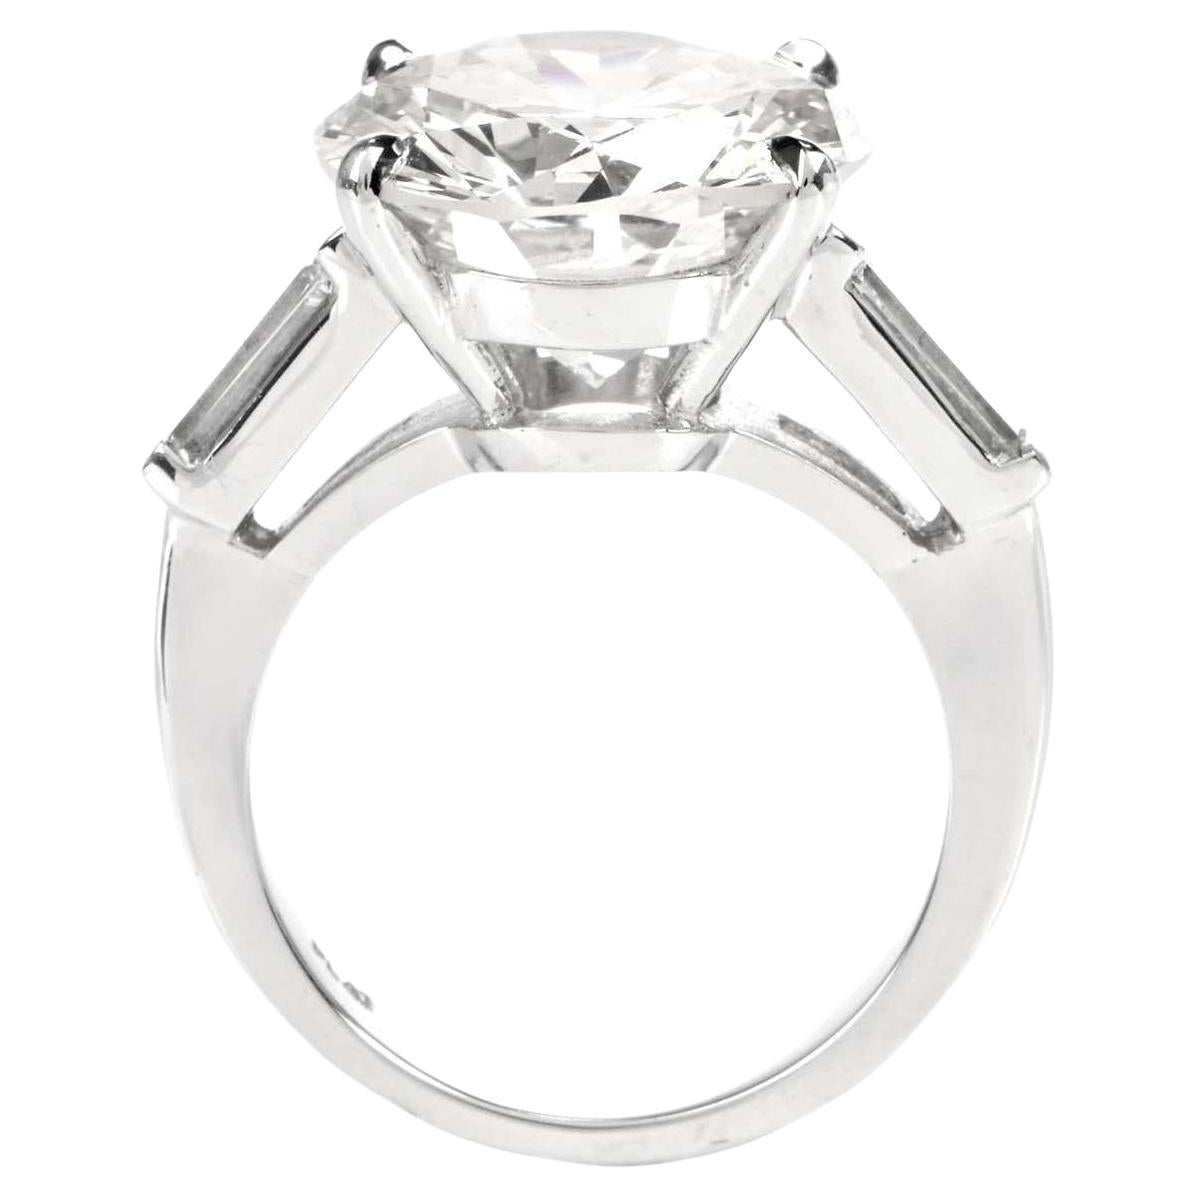 Ce gros diamant de 3,00 carats certifié GIA triple excellent est d'une blancheur éclatante, 100% propre à l'œil et d'une brillance absolument phénoménale ! Ce diamant a été sélectionné à la main parce qu'il est tout à fait propre à l'œil, de couleur